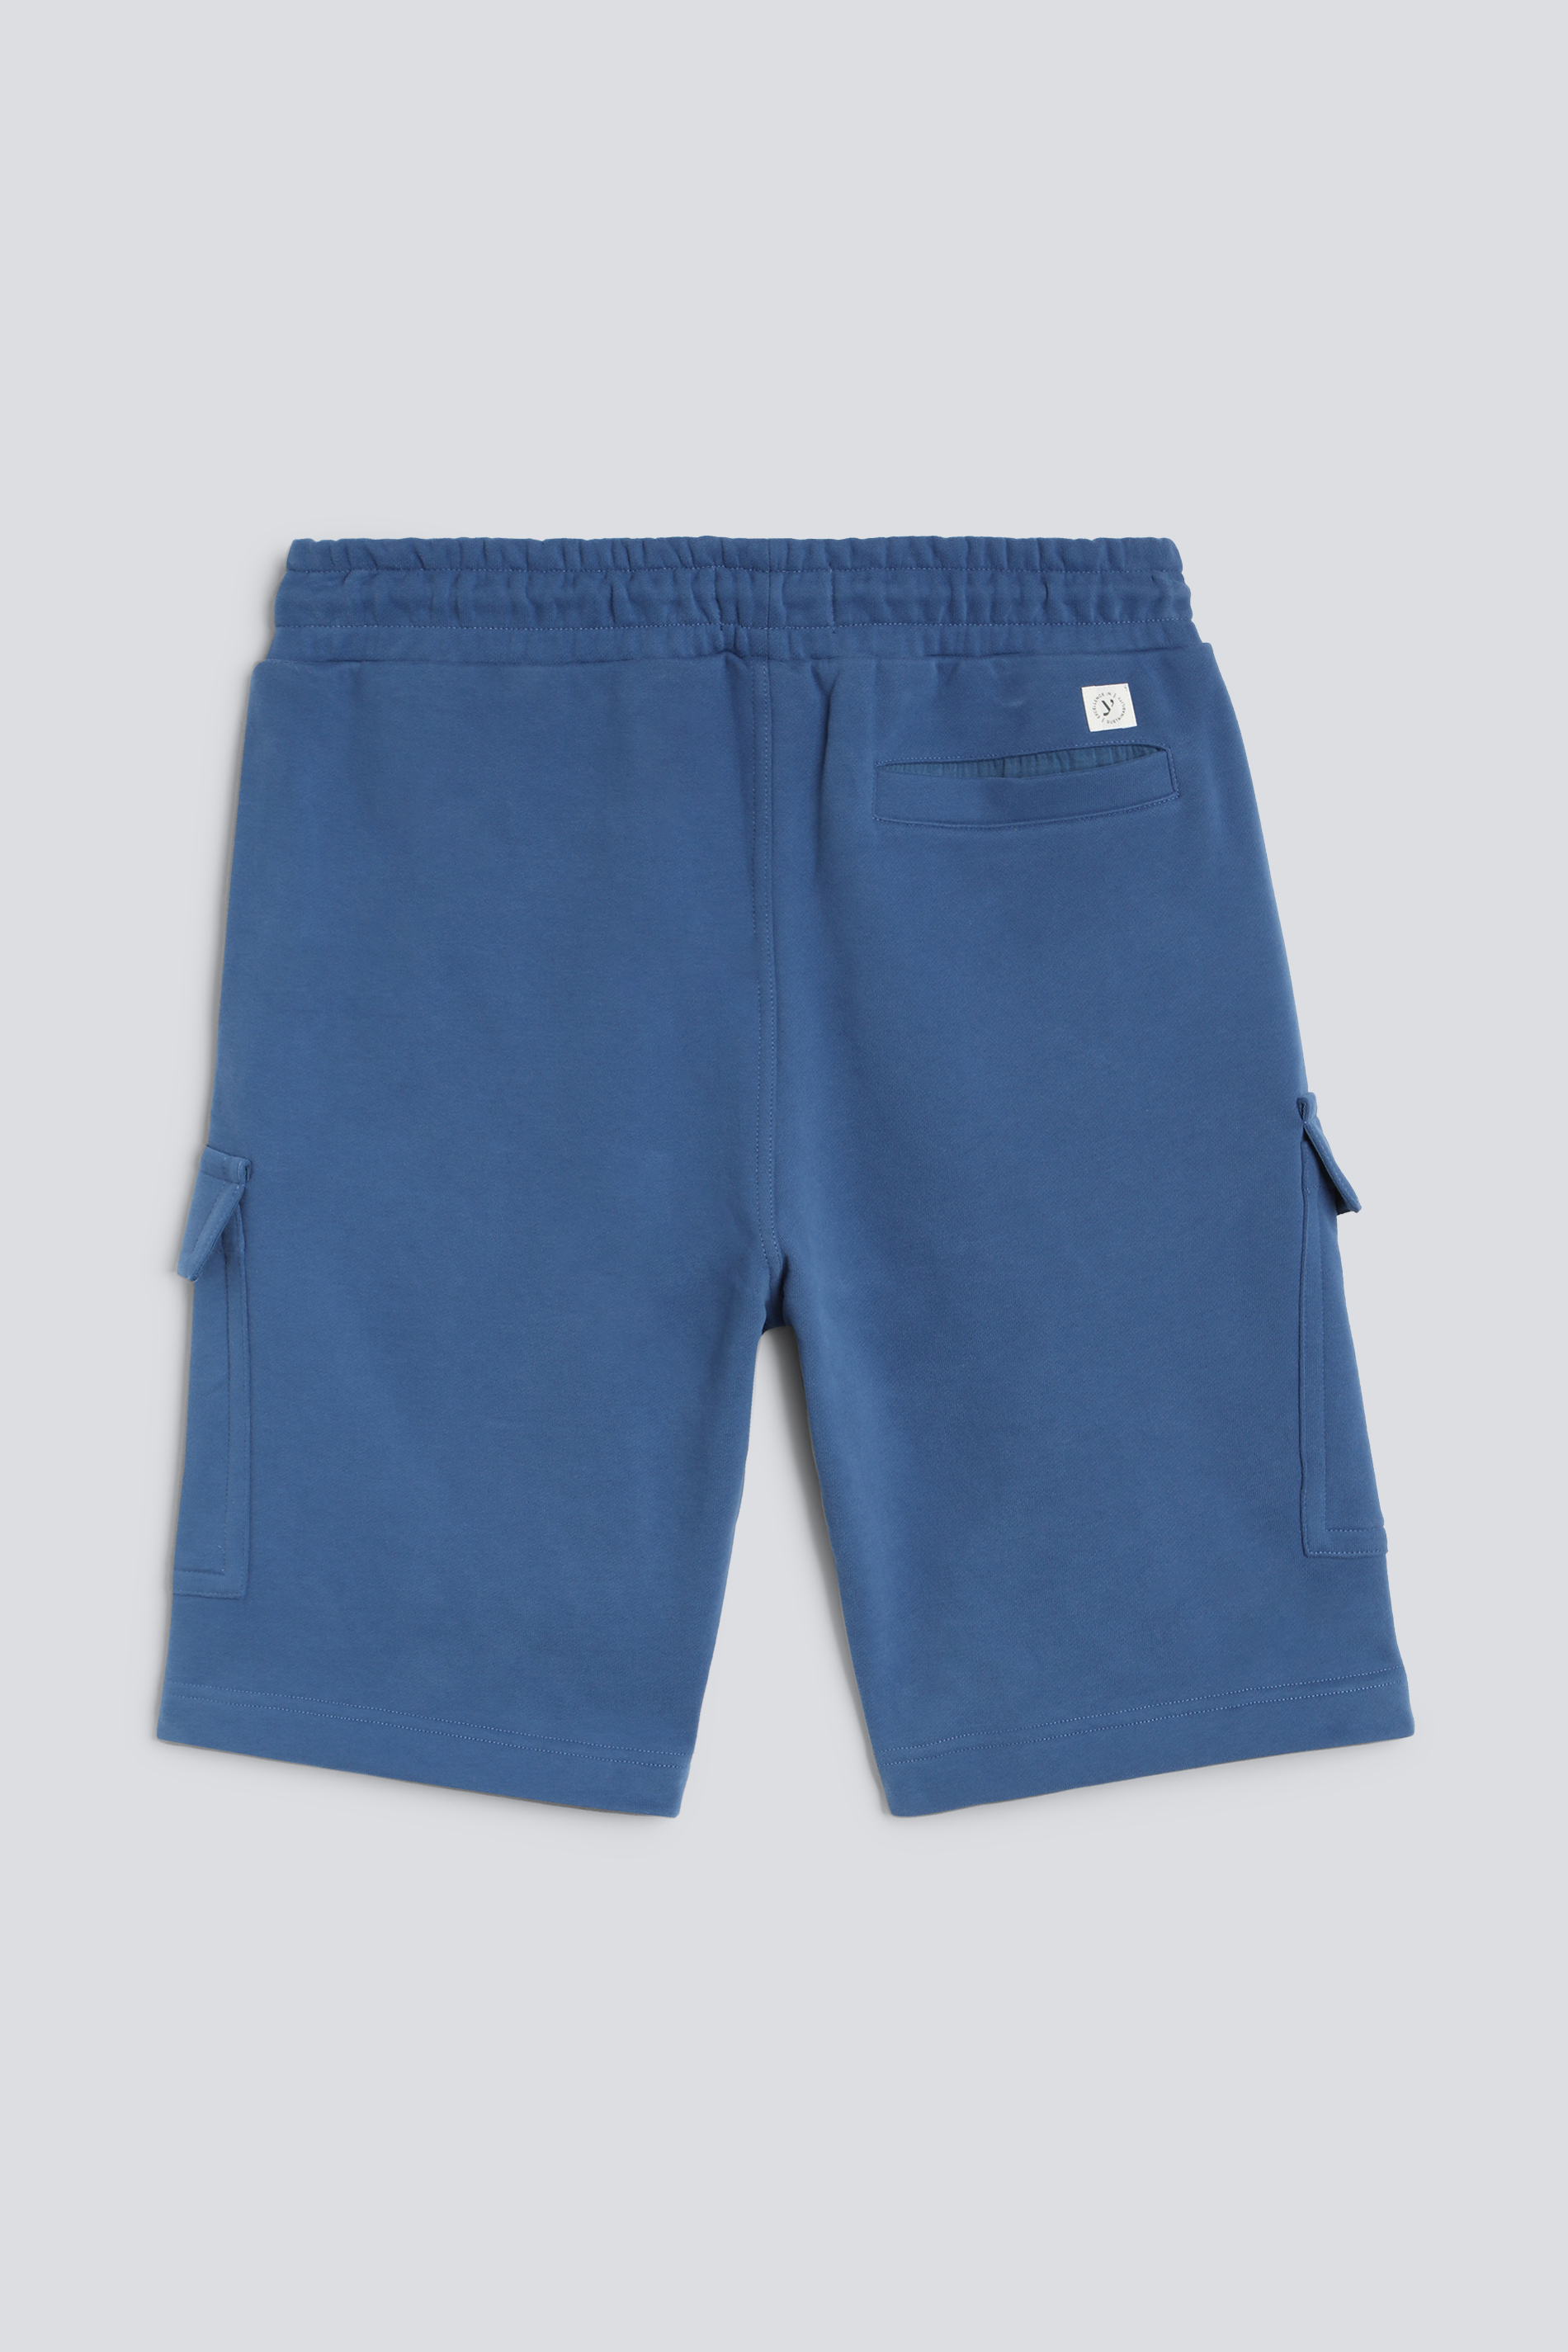 Cargo shorts Serie Felpa Cotone Rear View | mey®